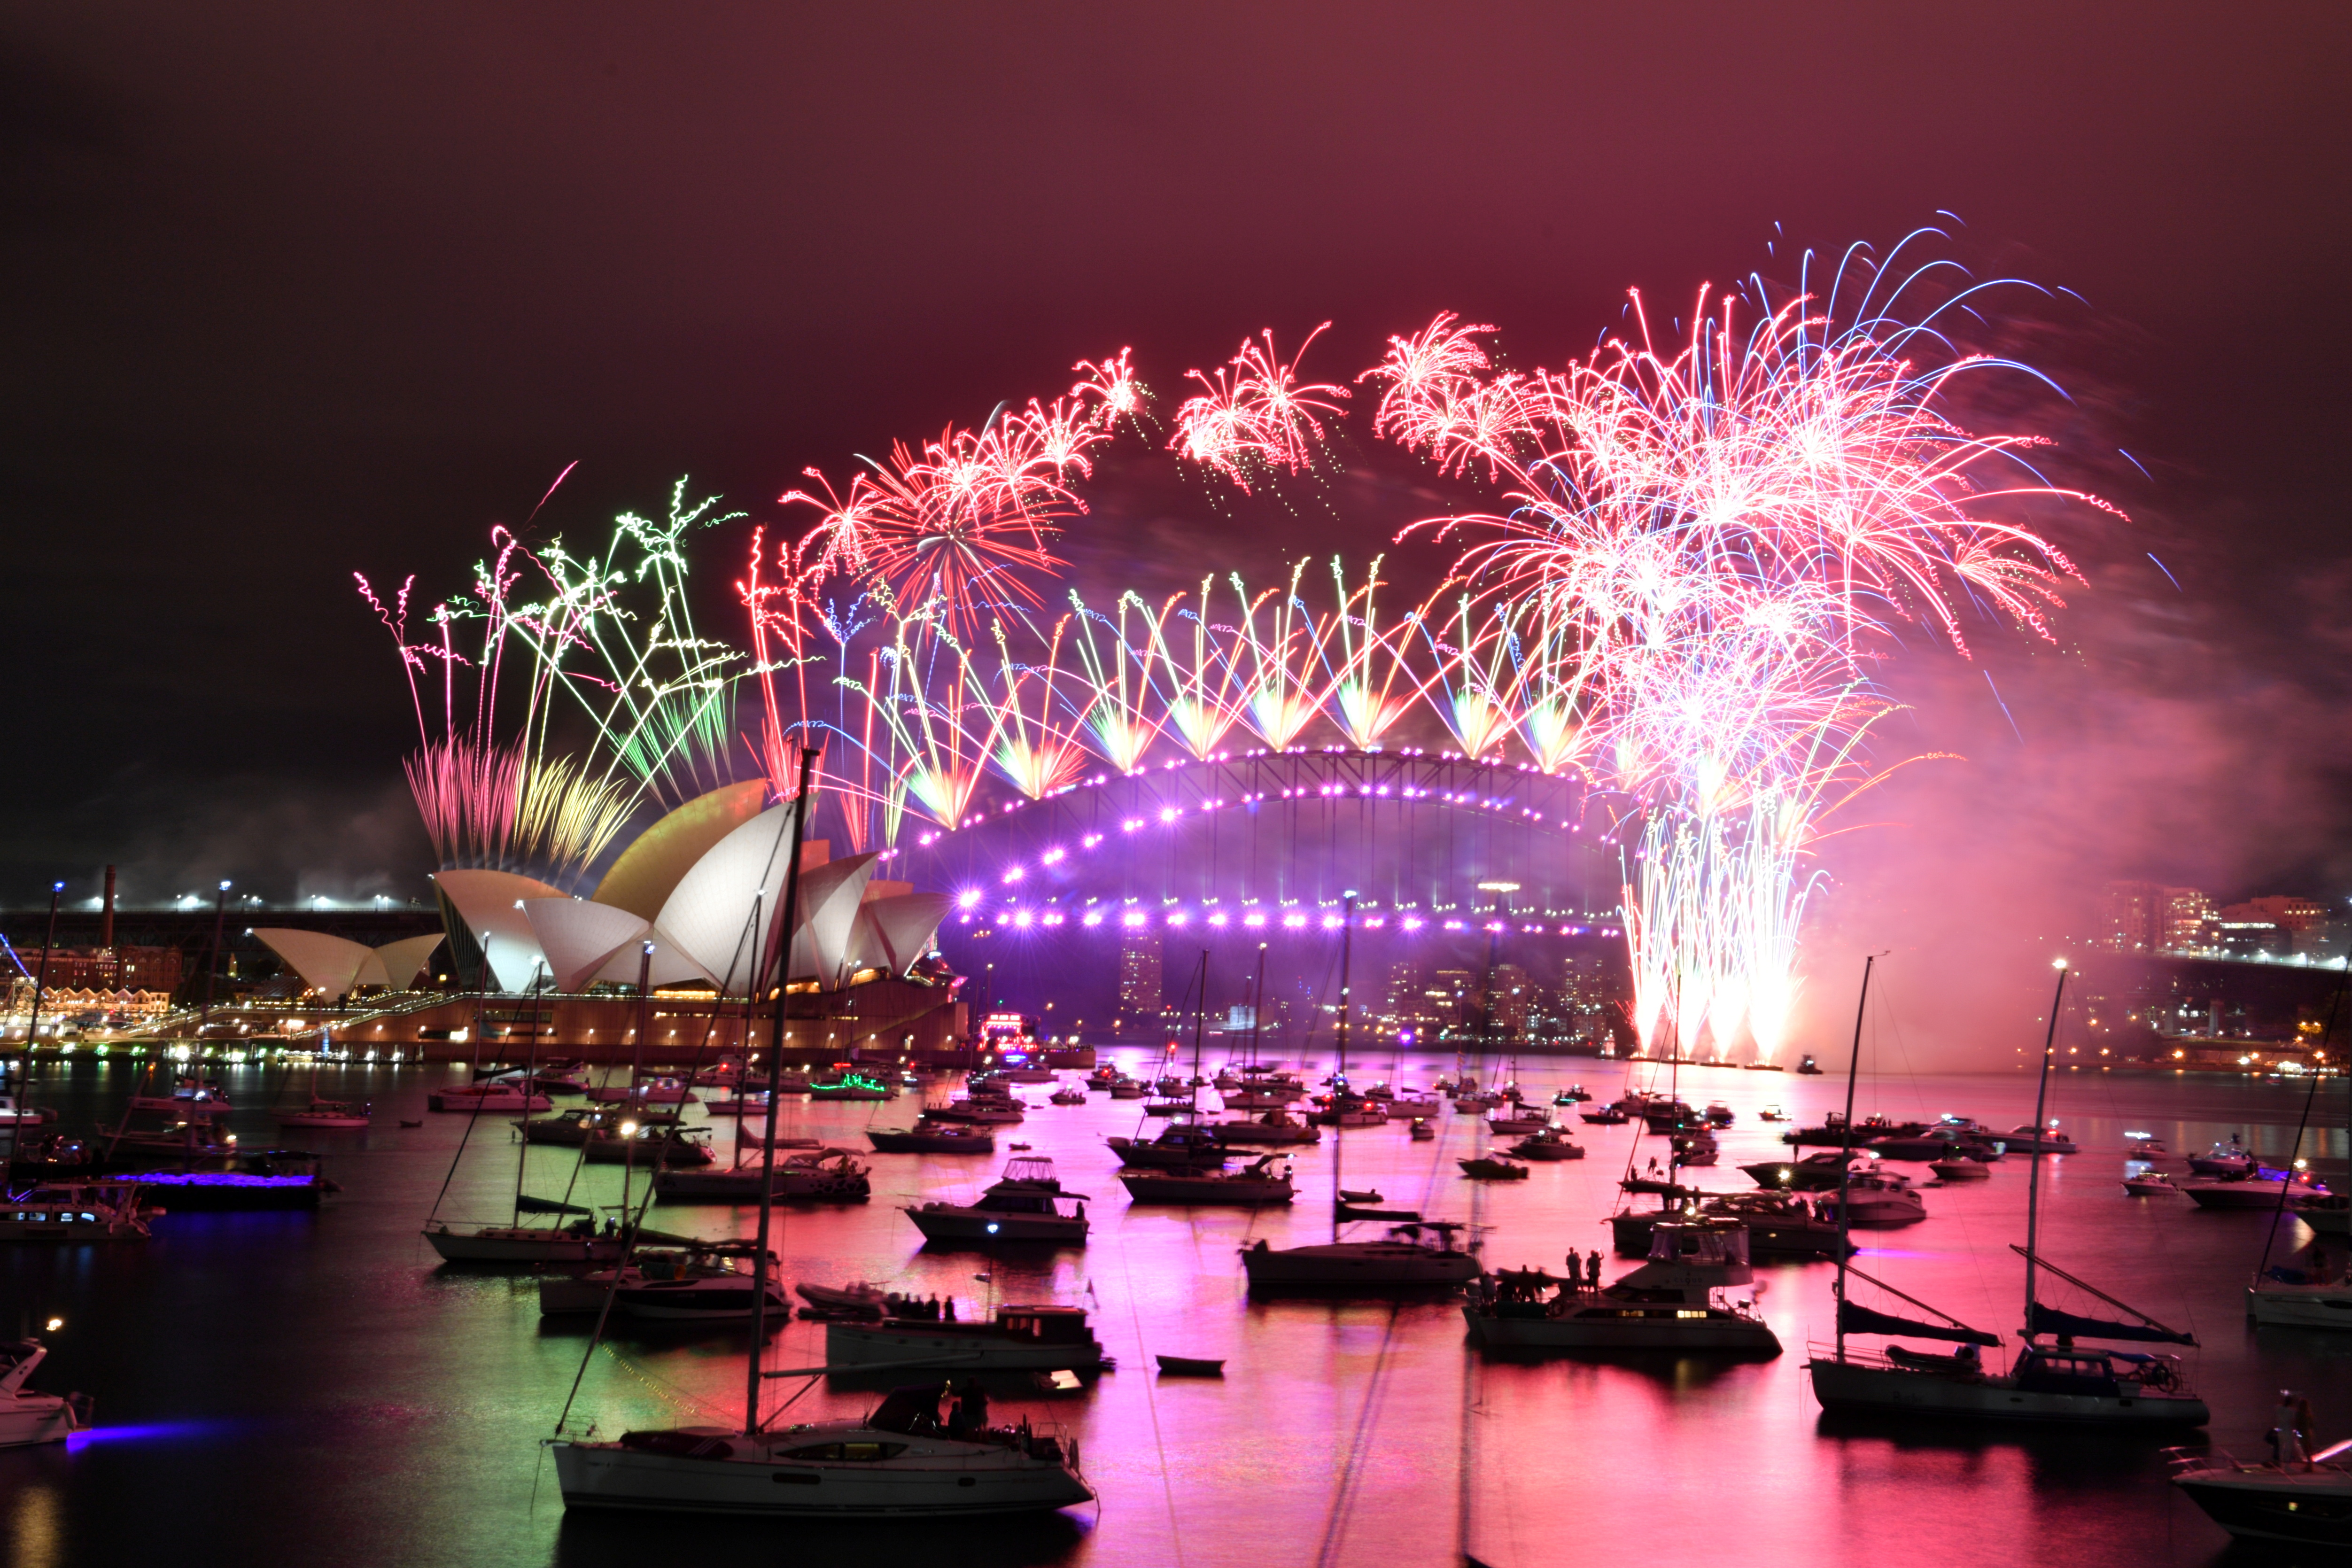 Los fuegos artificiales estallan sobre la Ópera de Sídney y el Puente del Puerto de Sídney durante las celebraciones de Año Nuevo reducidas durante la pandemia de COVID-19, en Australia, el 1 de enero de 2021. Imagen de AAP para el Gobierno de Nueva Gales del Sur/Mick Tsikas/Handout via REUTERS